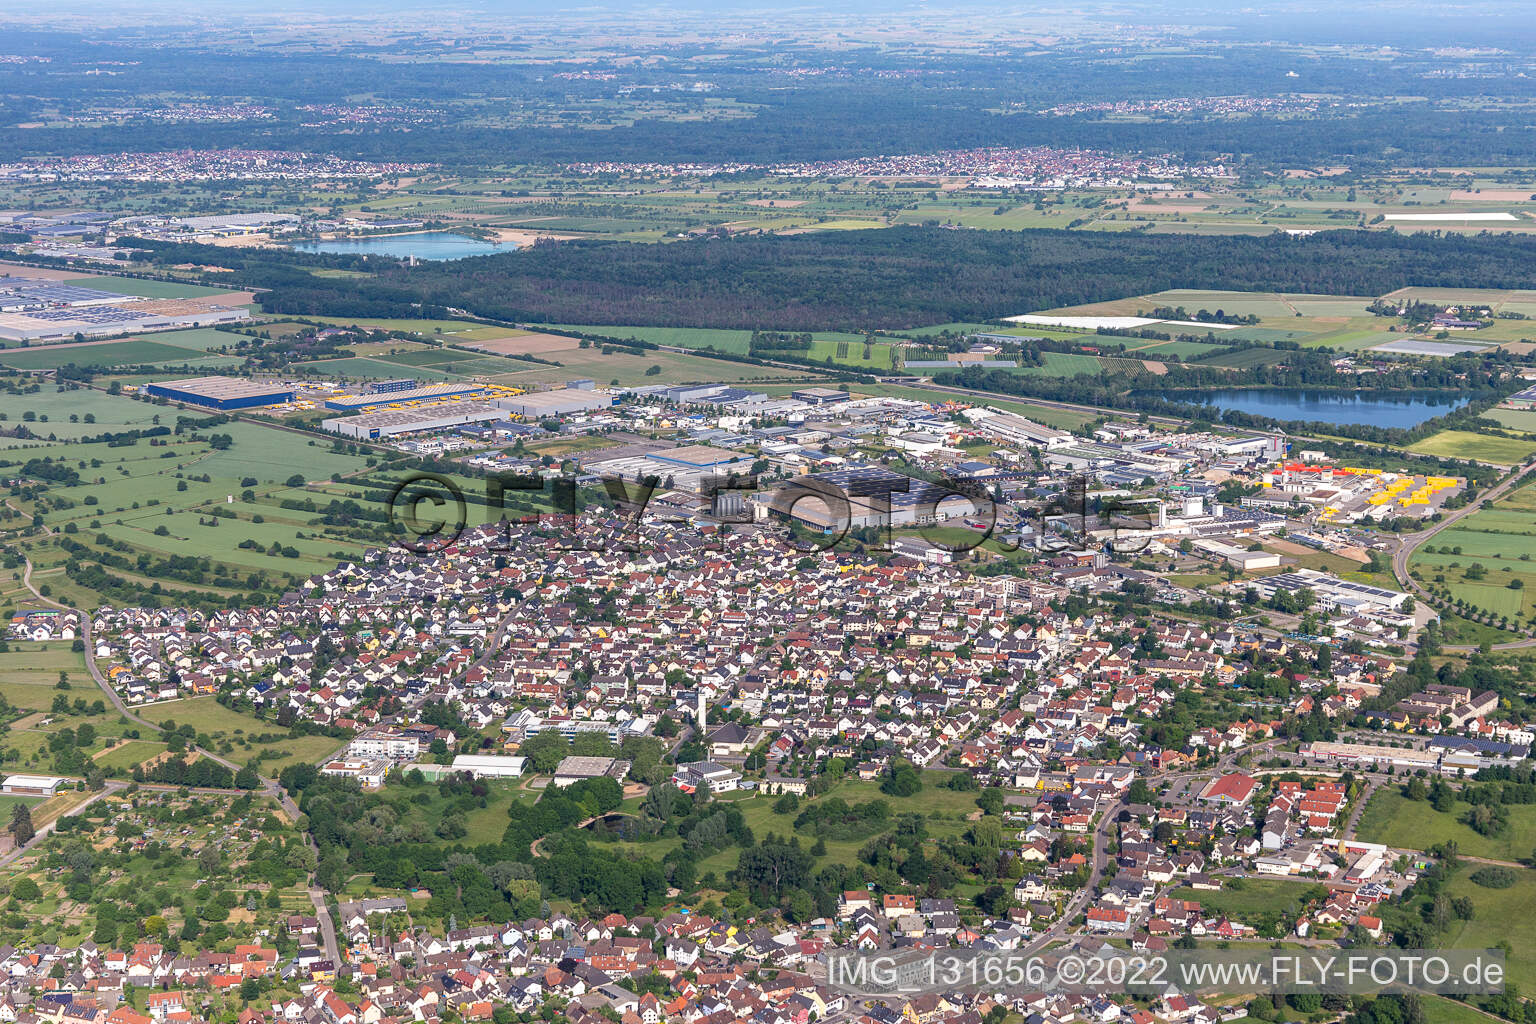 Malsch im Bundesland Baden-Württemberg, Deutschland aus der Luft betrachtet